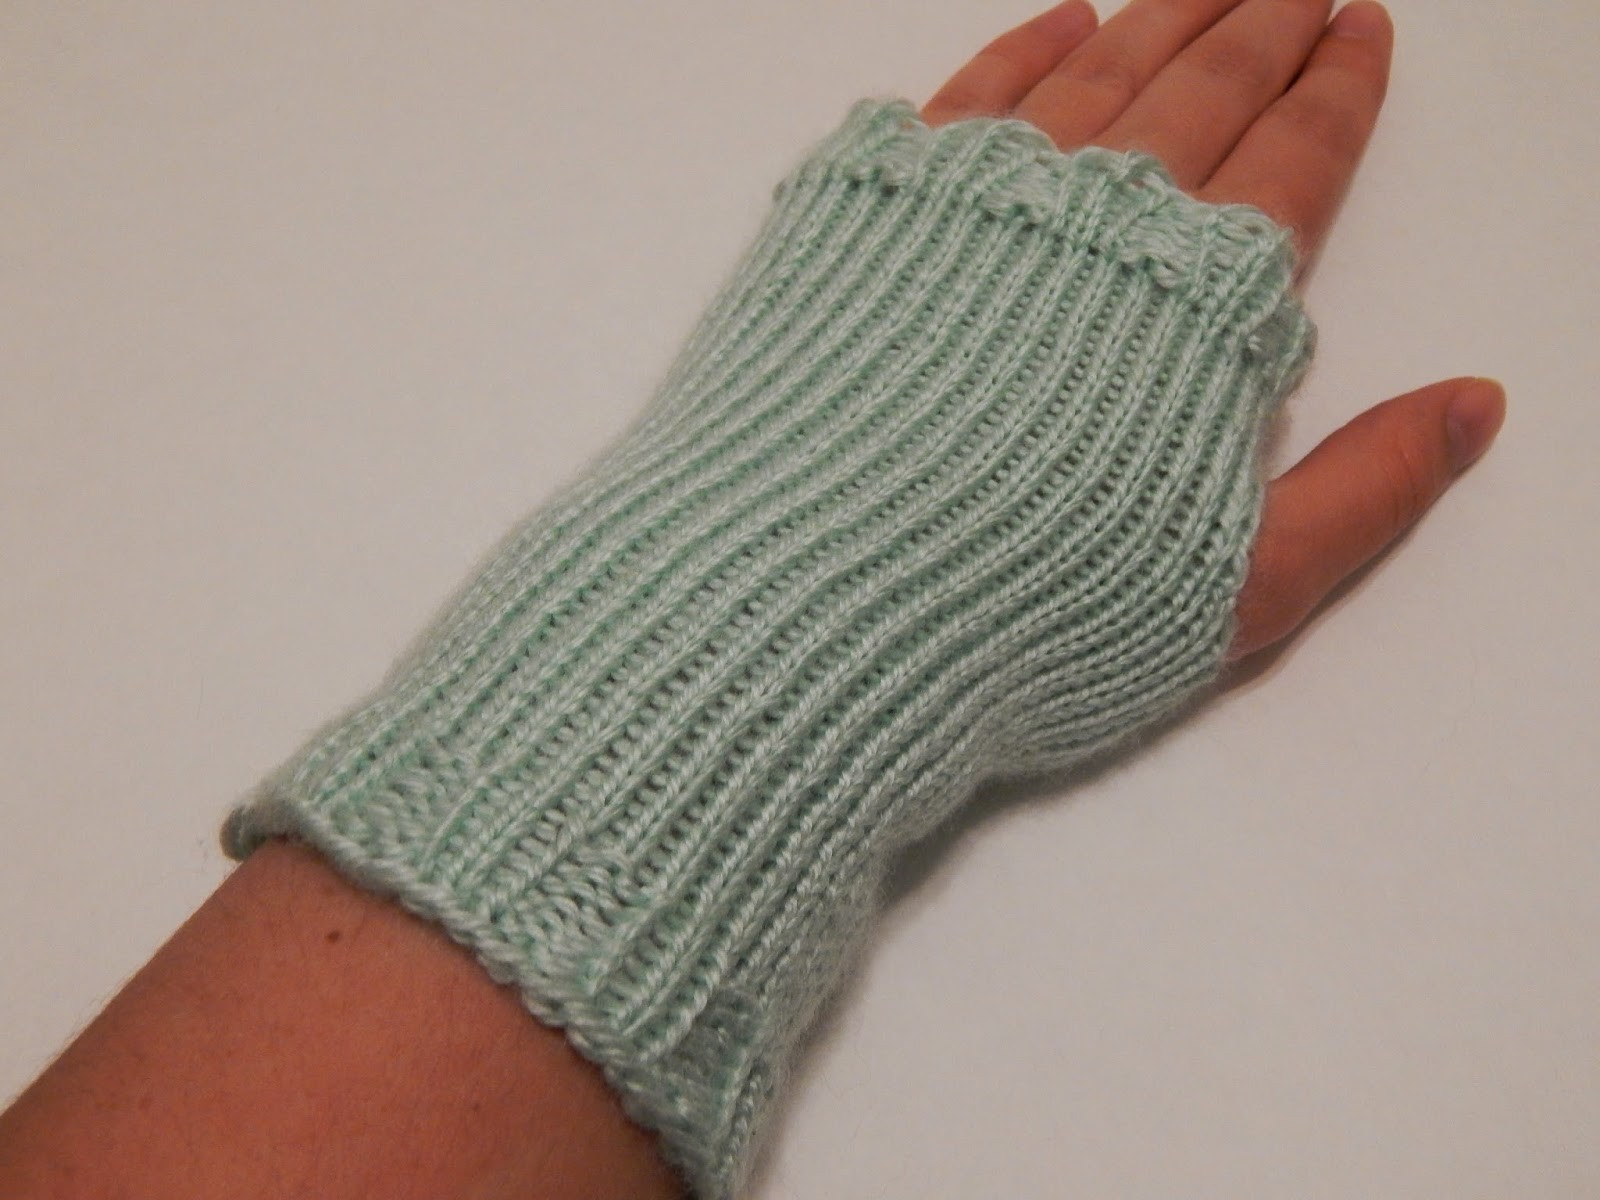 Mens Fingerless Gloves Knitting Pattern 48 Knitting Patterns For Fingerless Gloves Guide Patterns